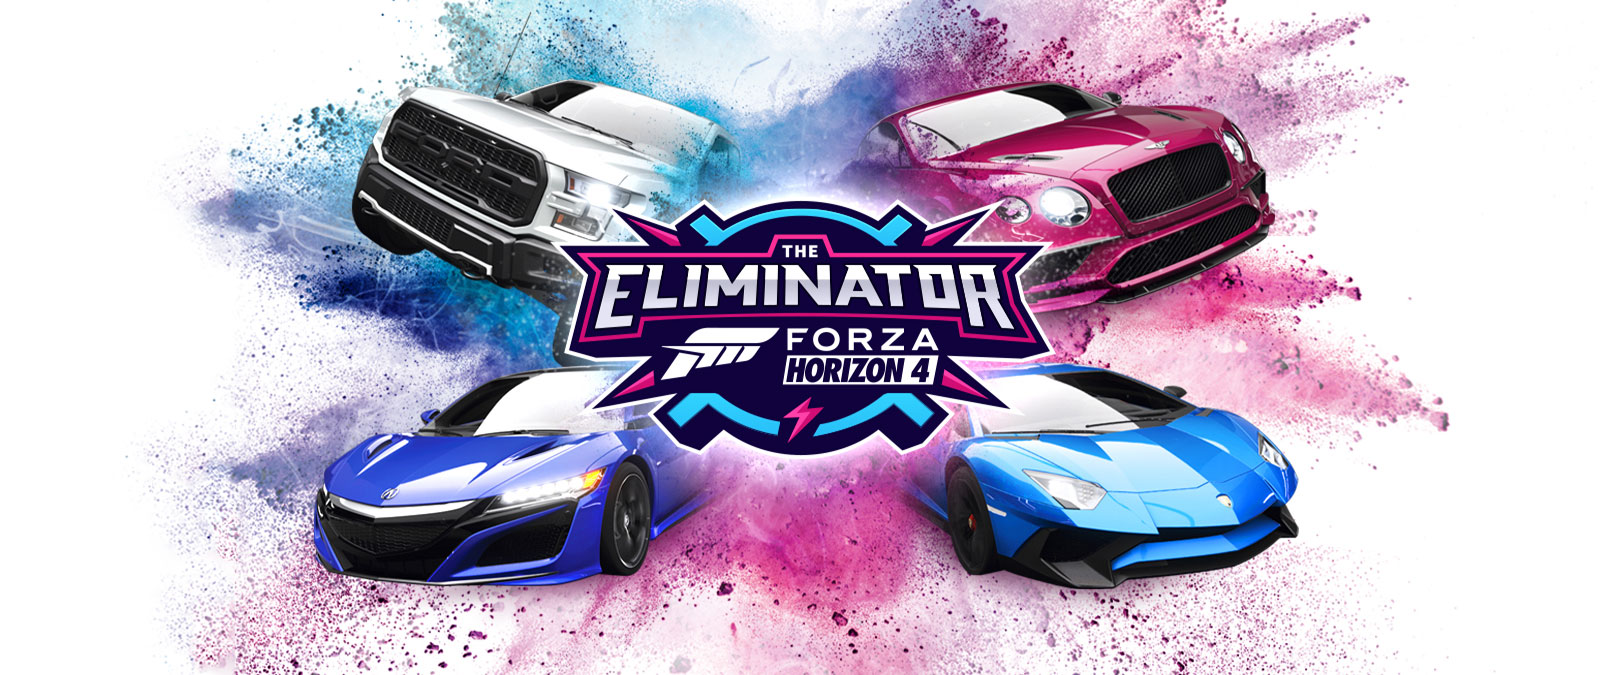 The Eliminator, logo Forza Horizon 4, quatre voitures avec de la poudre bleue et rose qui les entourent